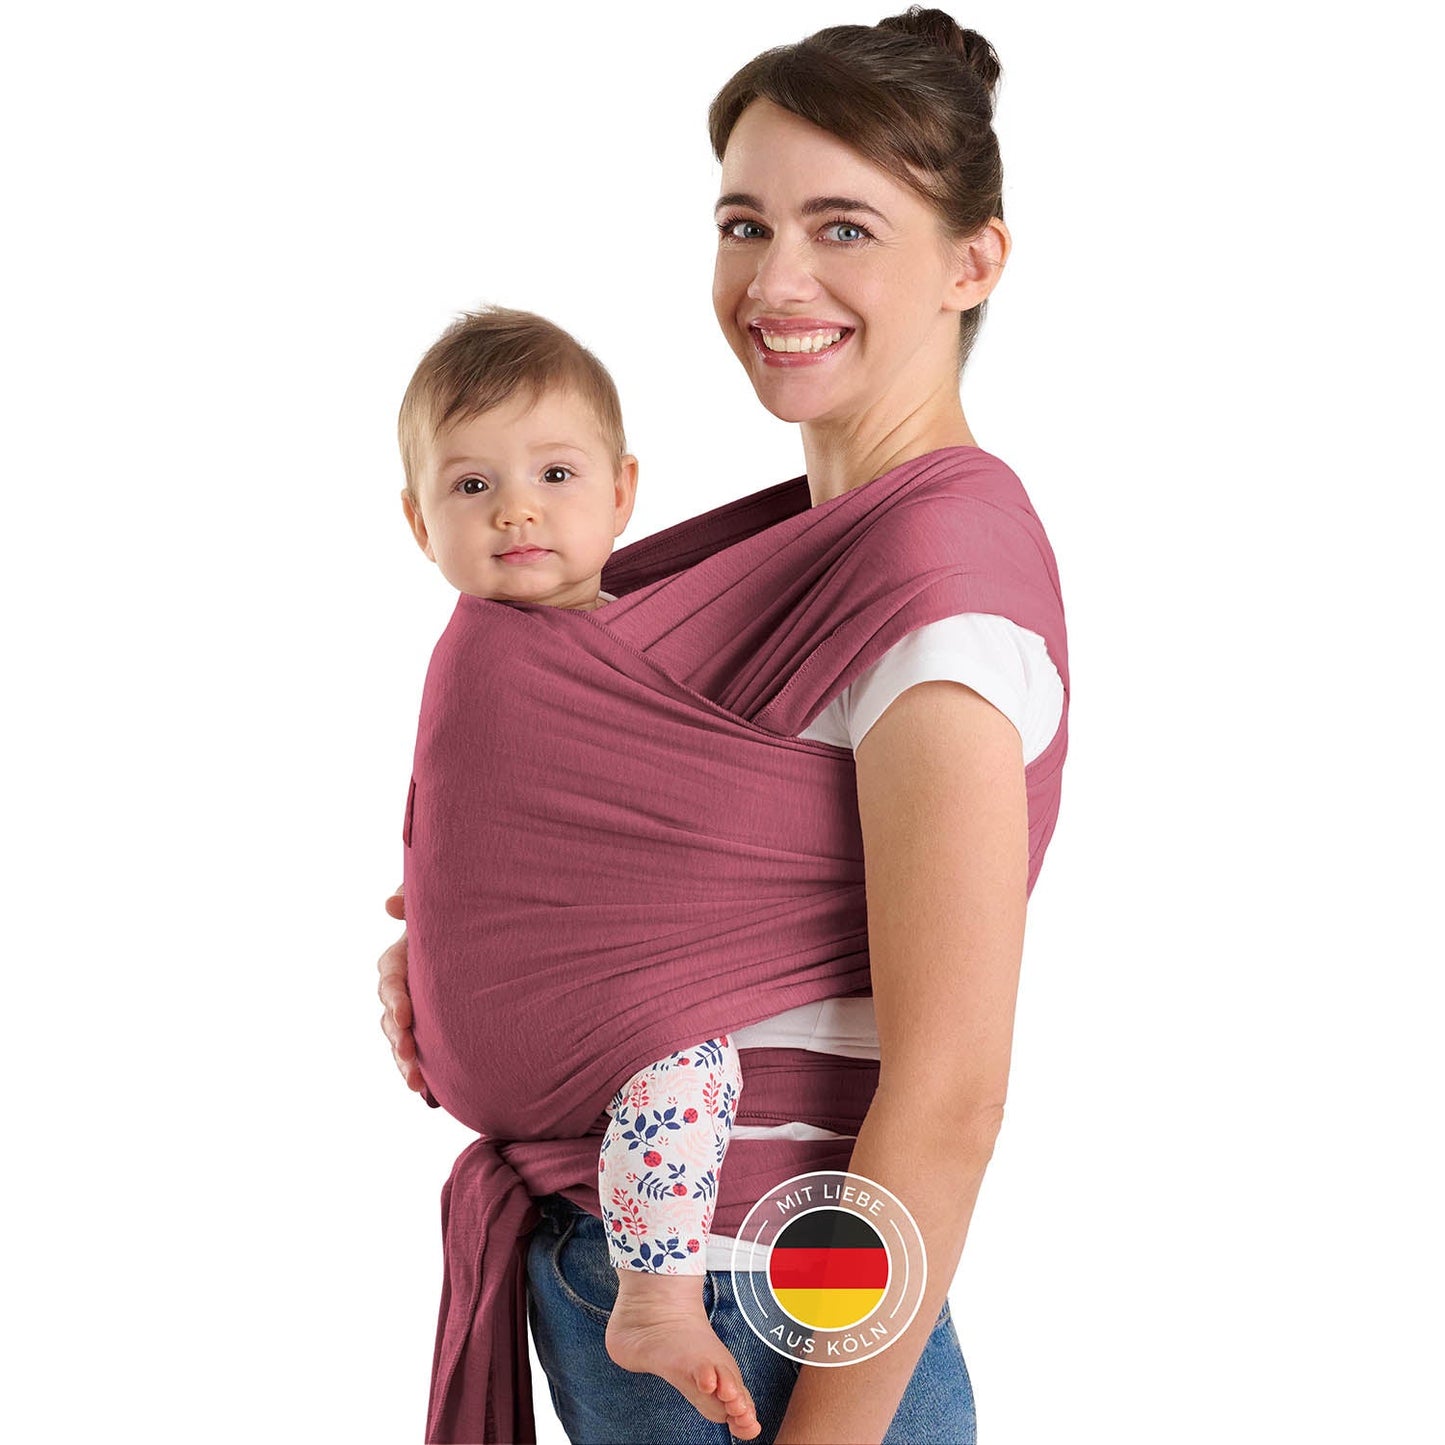 Frau mit Hochsteckfrisur trägt Baby in roter Tragehilfe vor sich beide schauen zur Kamera.